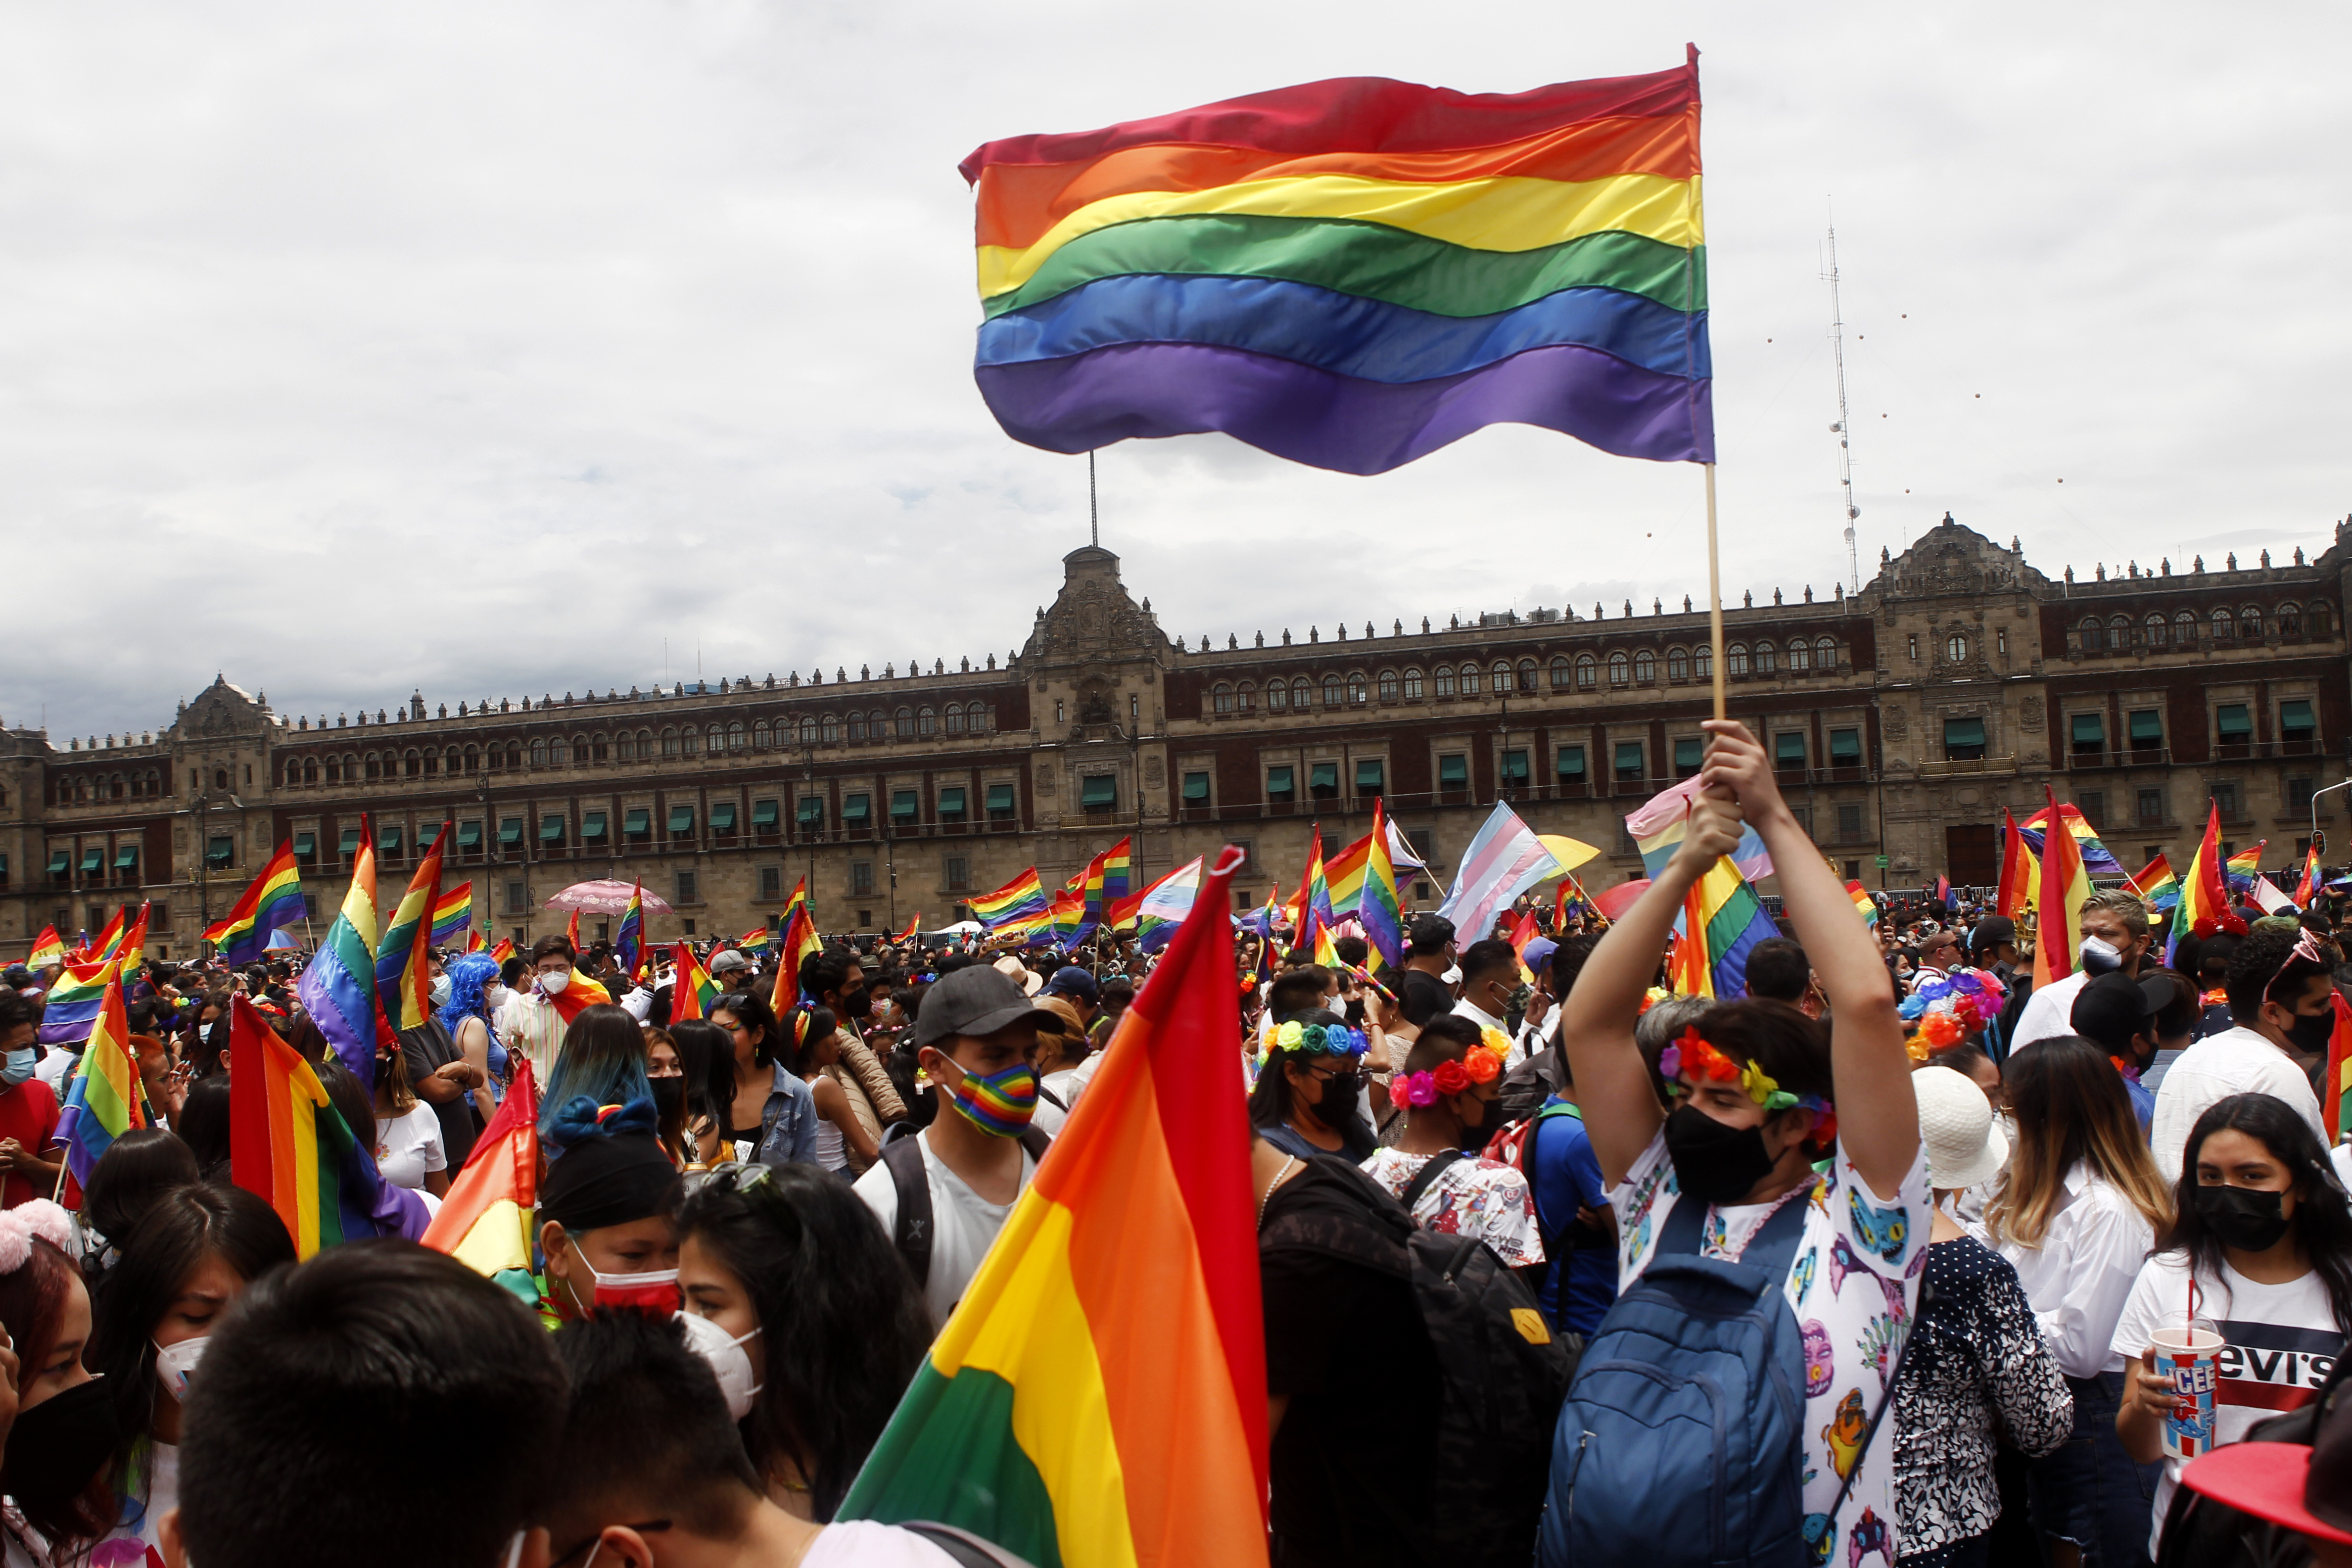 Marcha del Orgullo LGBTTTIQ en Ciudad de México pediría cobros elevados
Foto: Karina Herández / Infobae